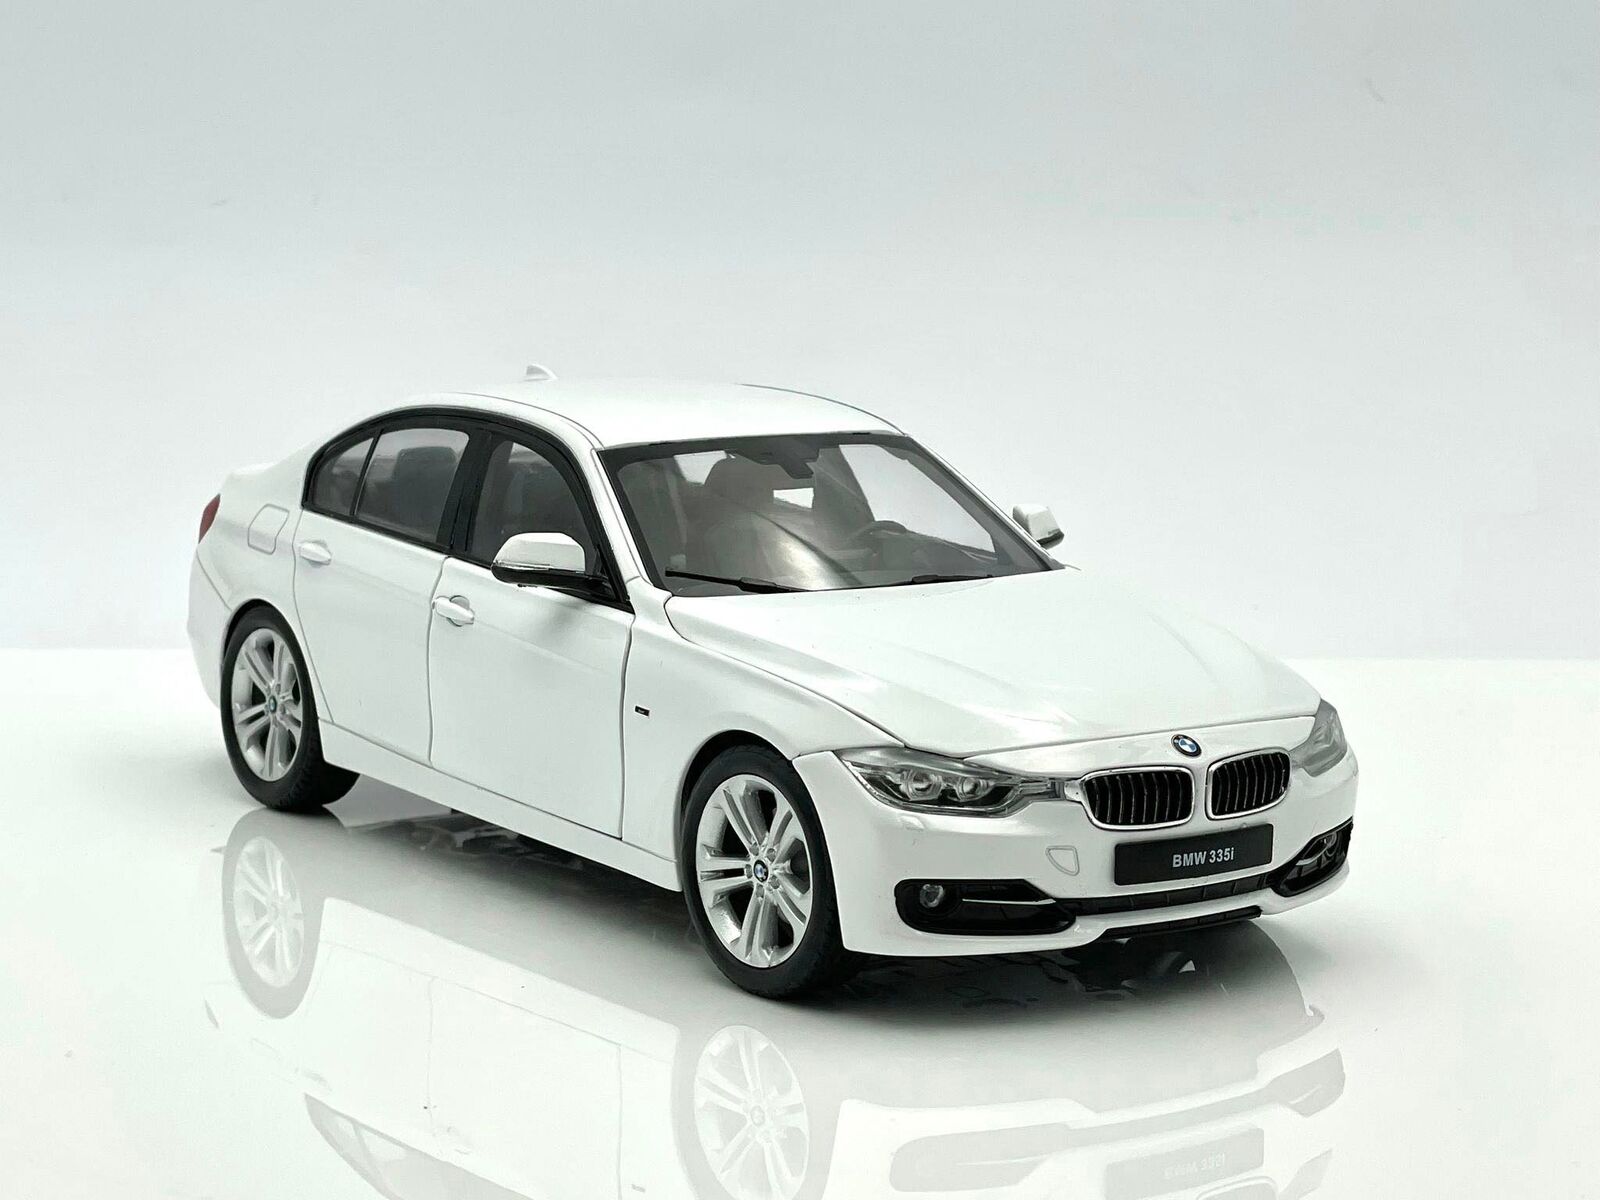 BMW 335i (F30) - 2012, white Welly 1:18